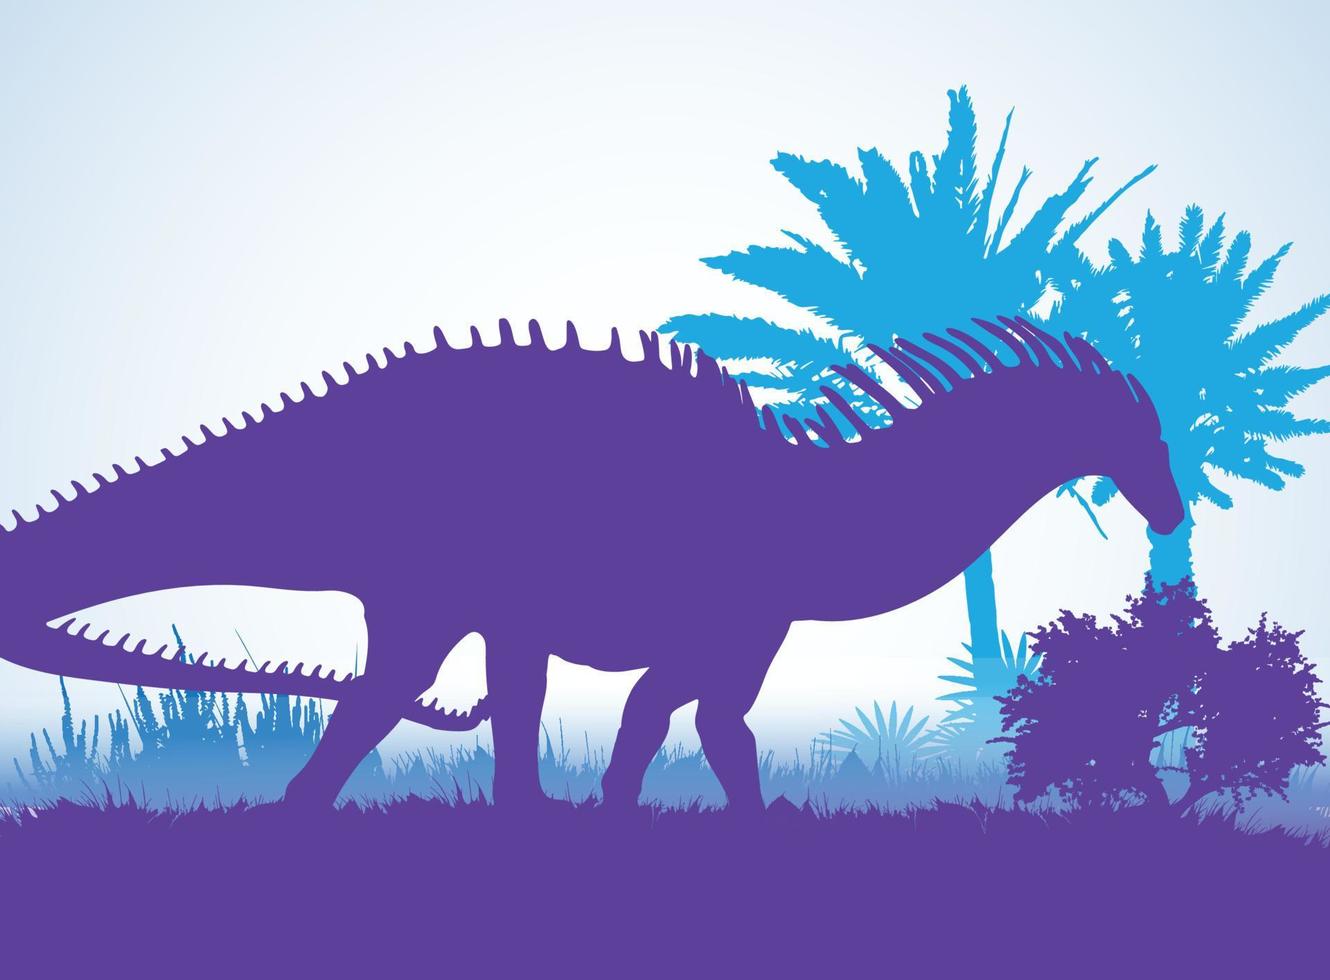 amargasaurus, sagome di dinosauri in ambiente preistorico strati sovrapposti sfondo decorativo banner astratto illustrazione vettoriale